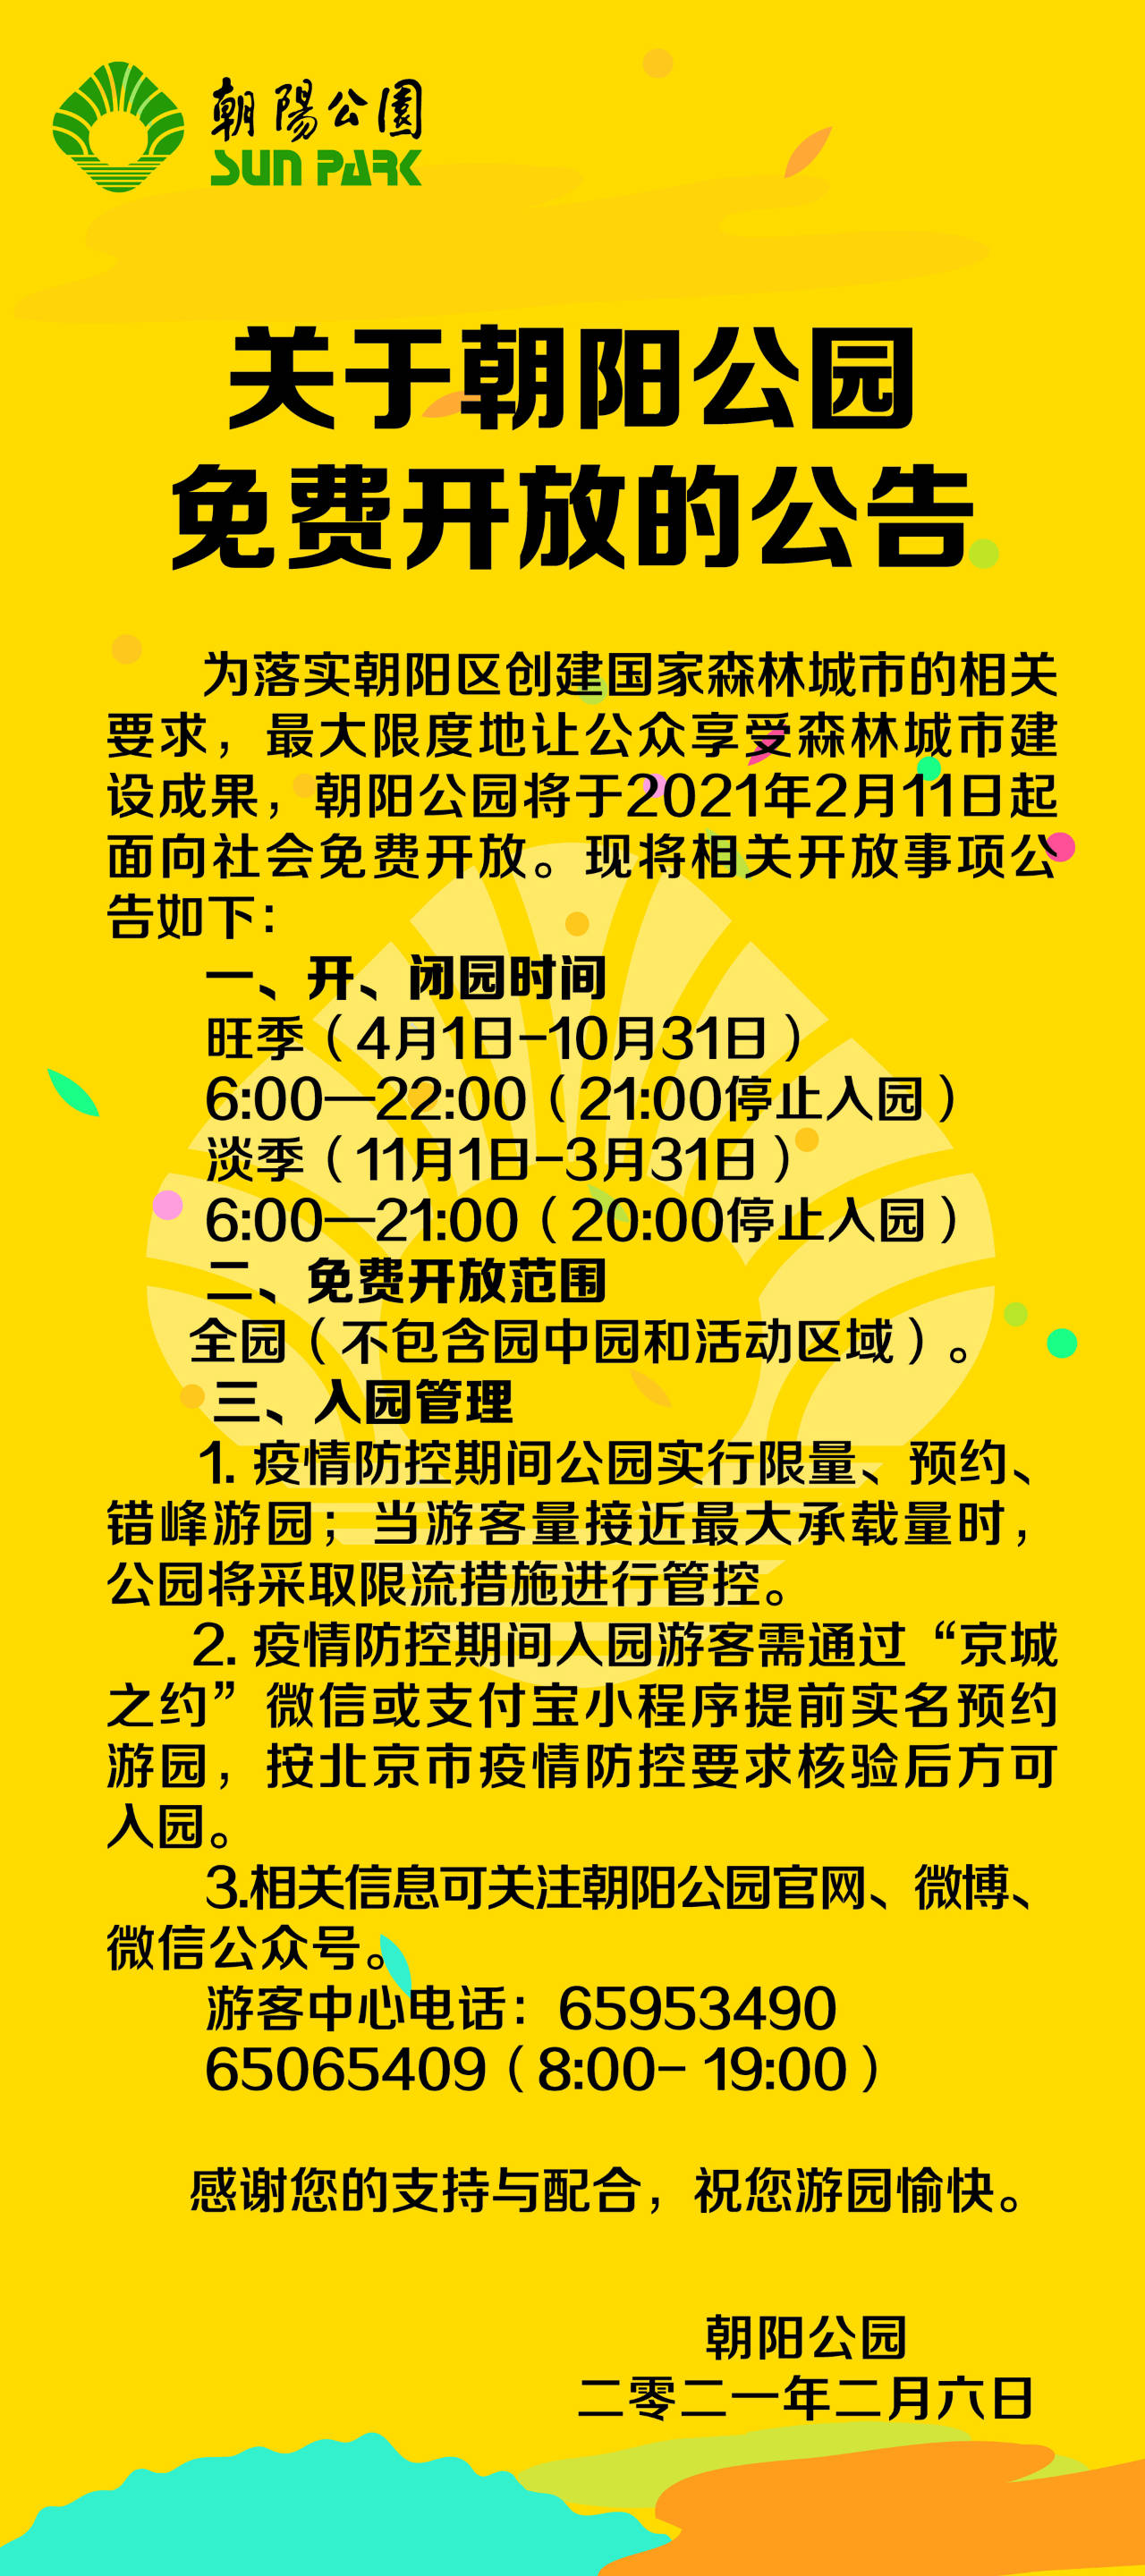 北京朝阳公园2月11日起免费开放